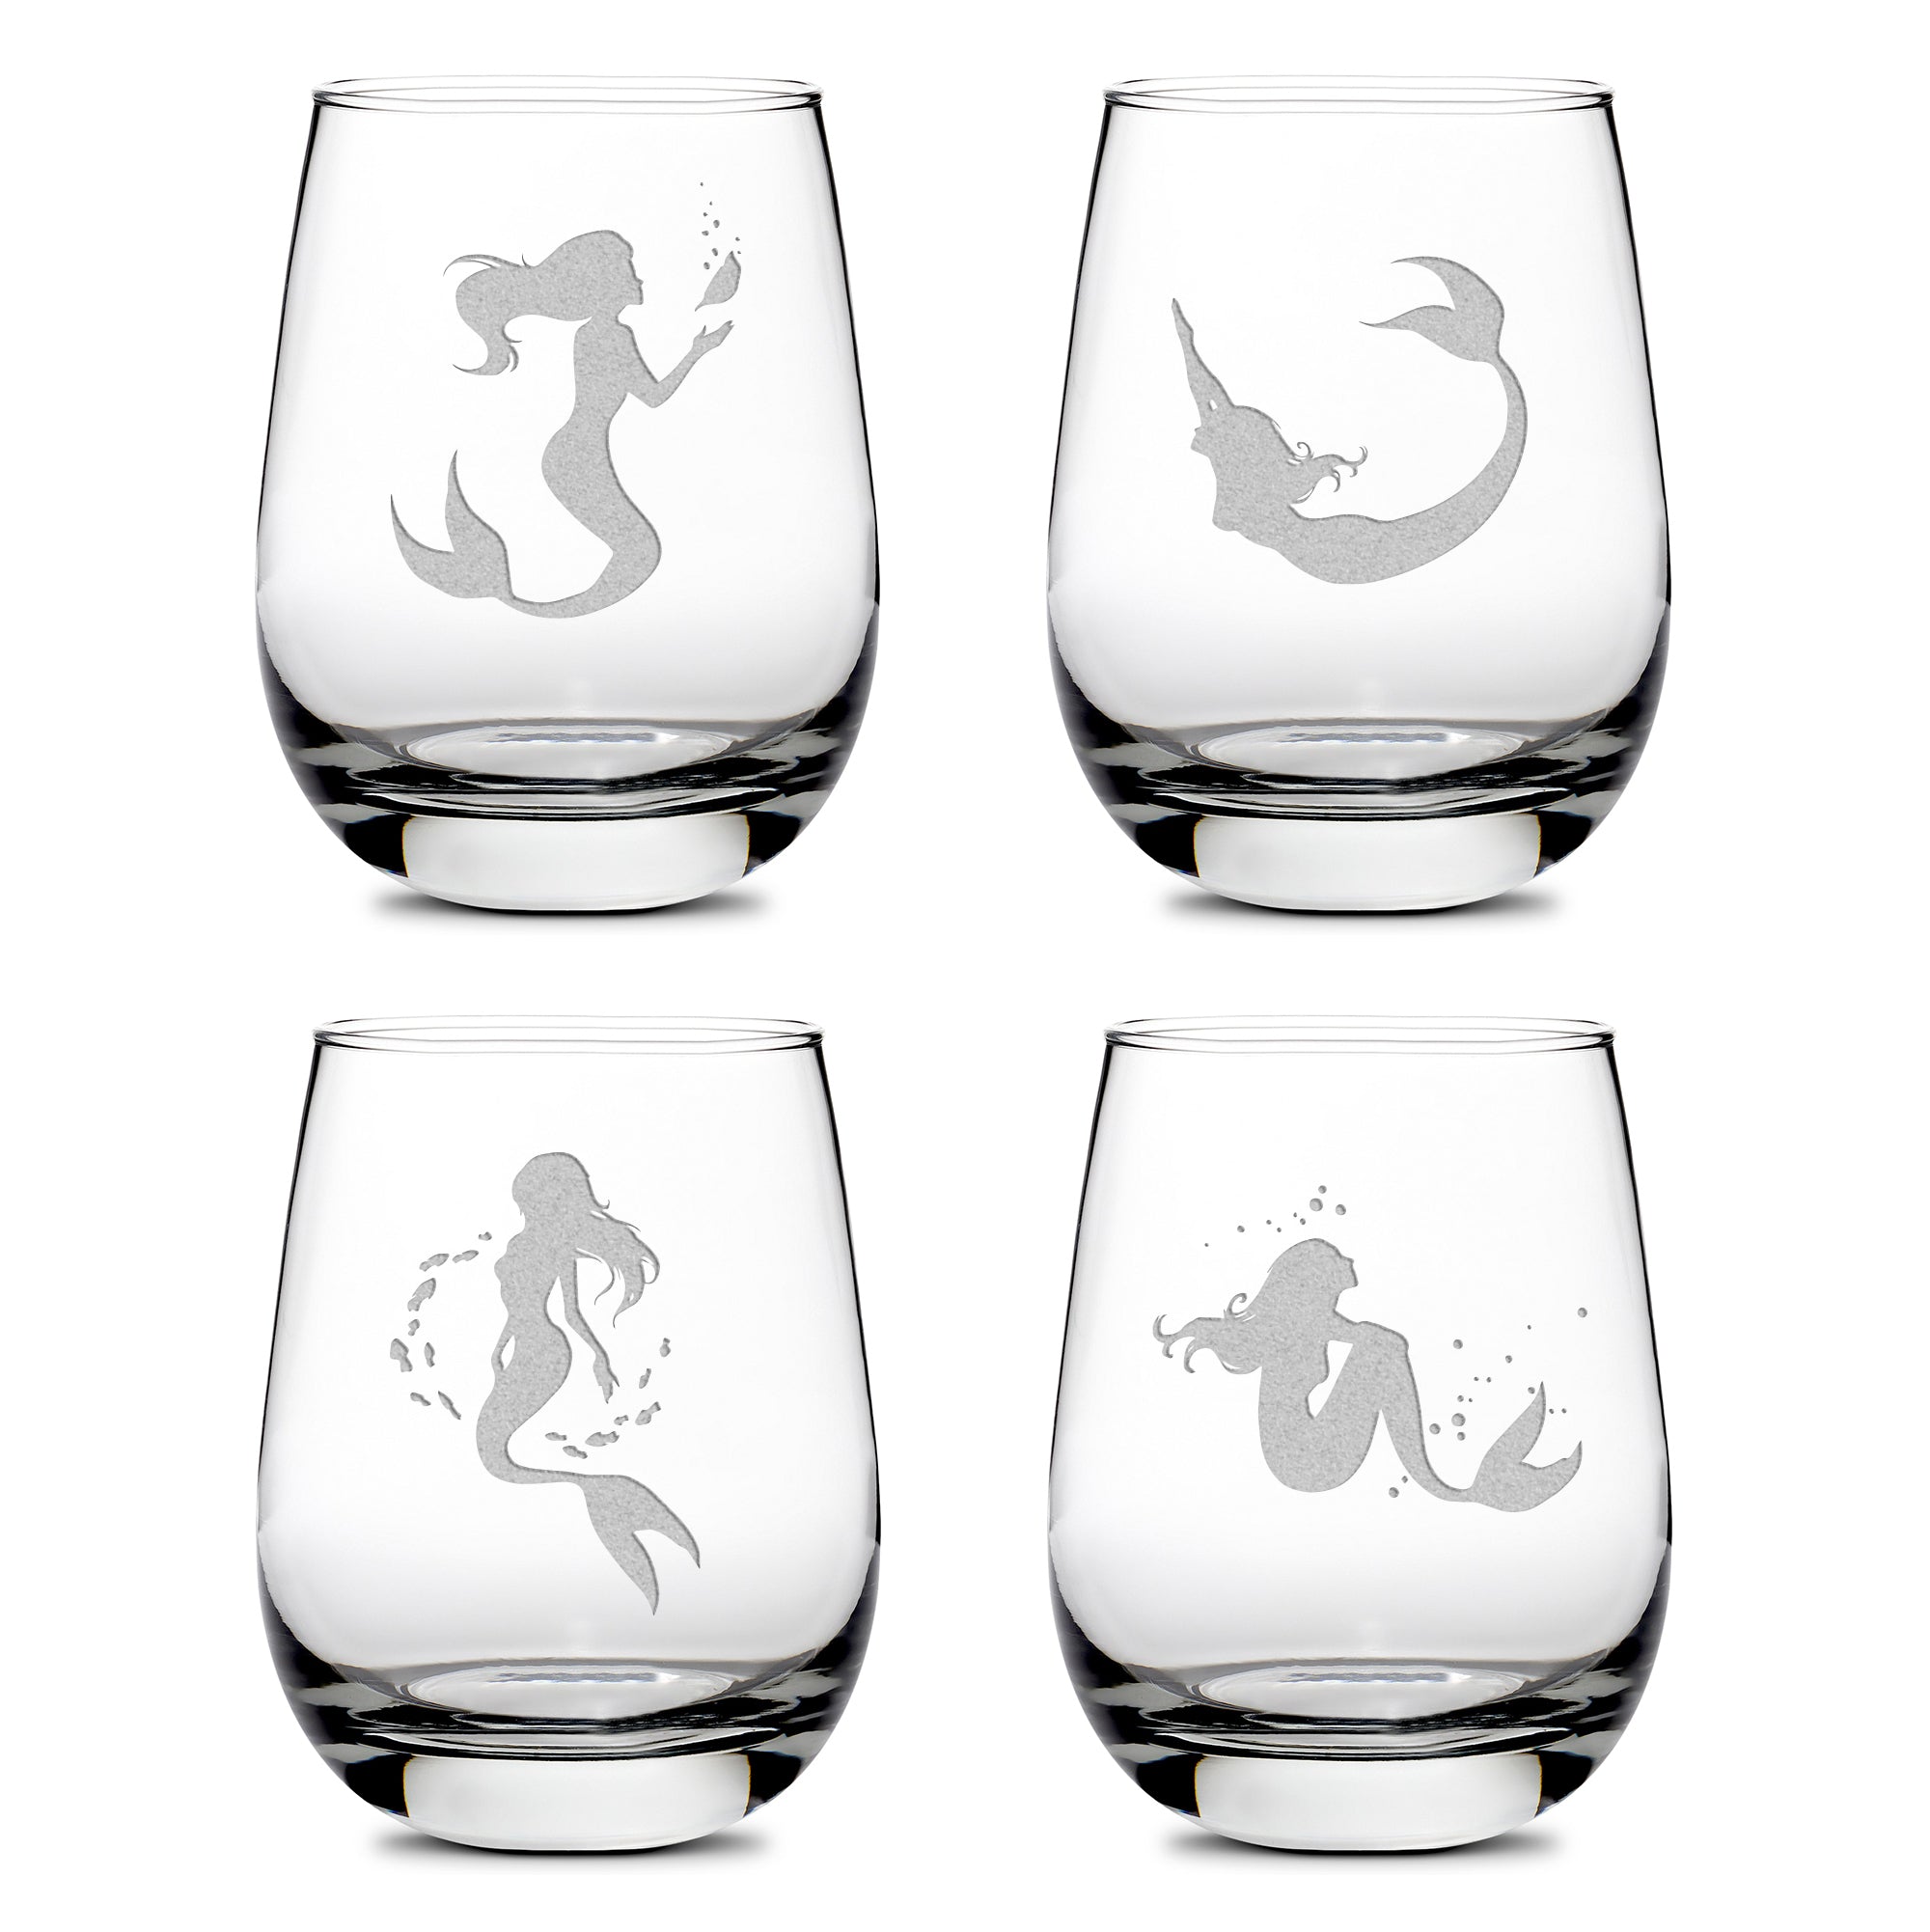 Premium Wine Glasses, Mermaid Designs, 16oz (Set of 4)